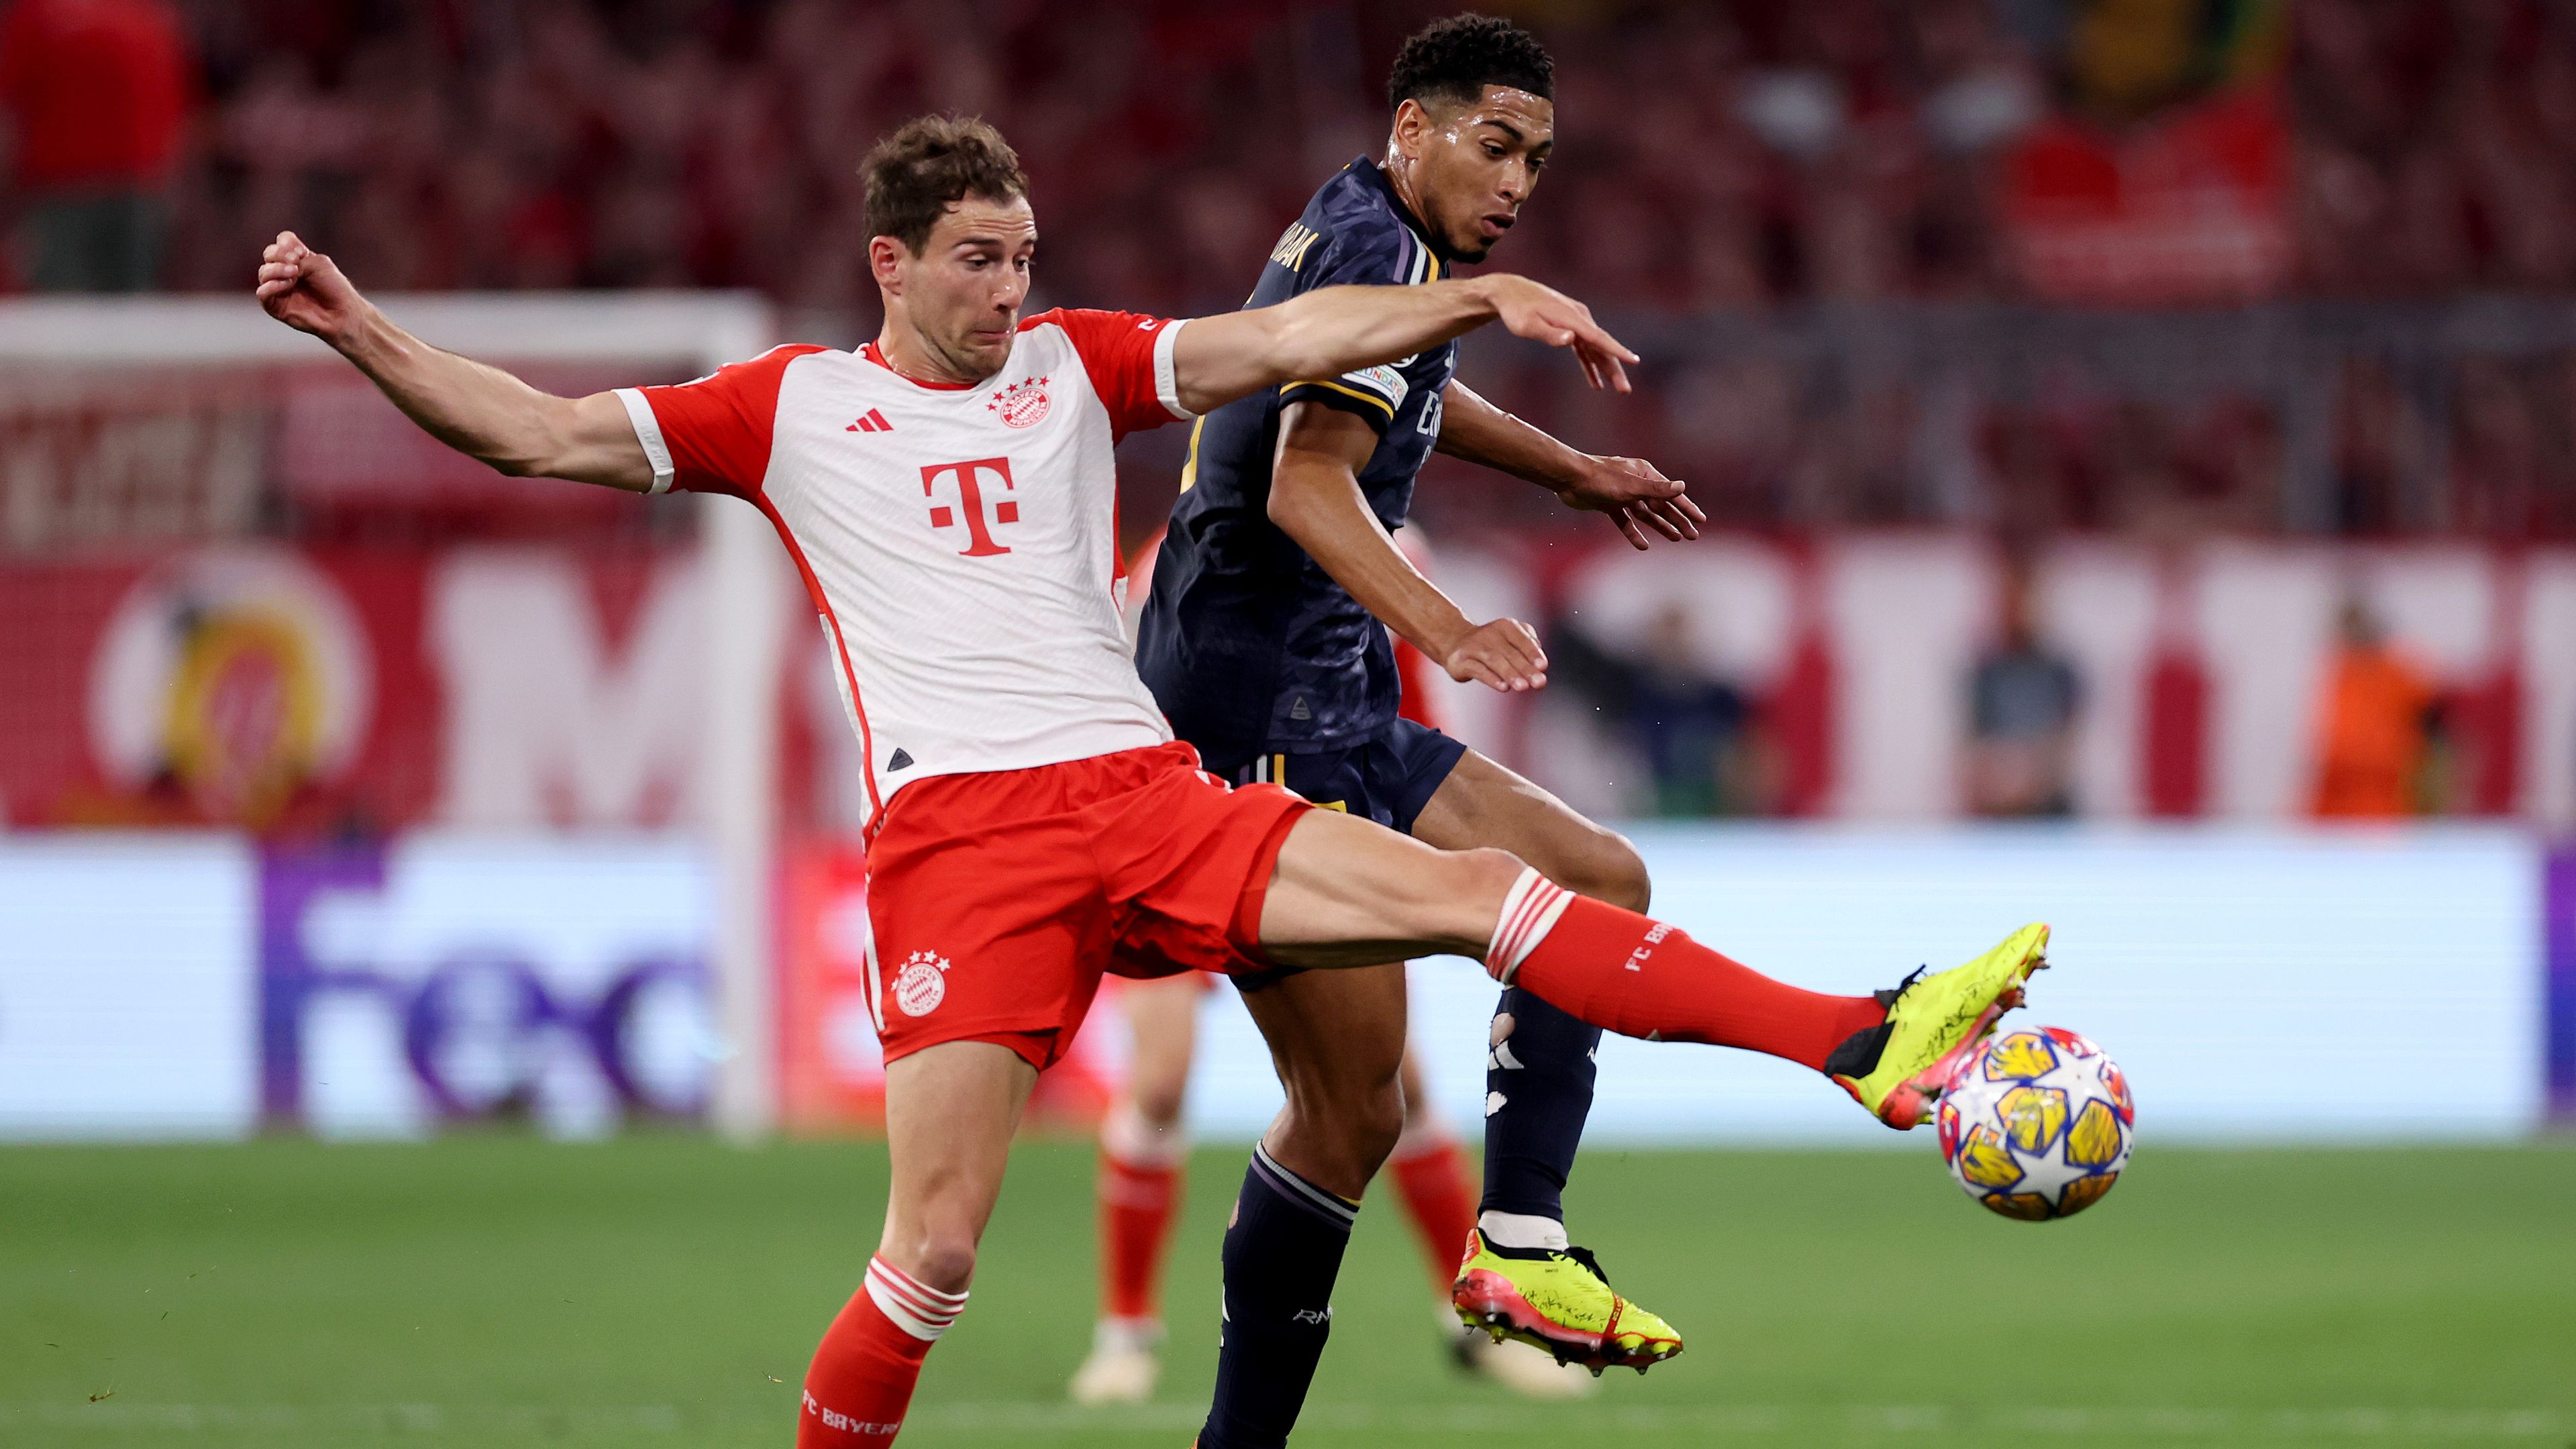 Élő: Vinícius góljával előnyben a Real a Bayern otthonában